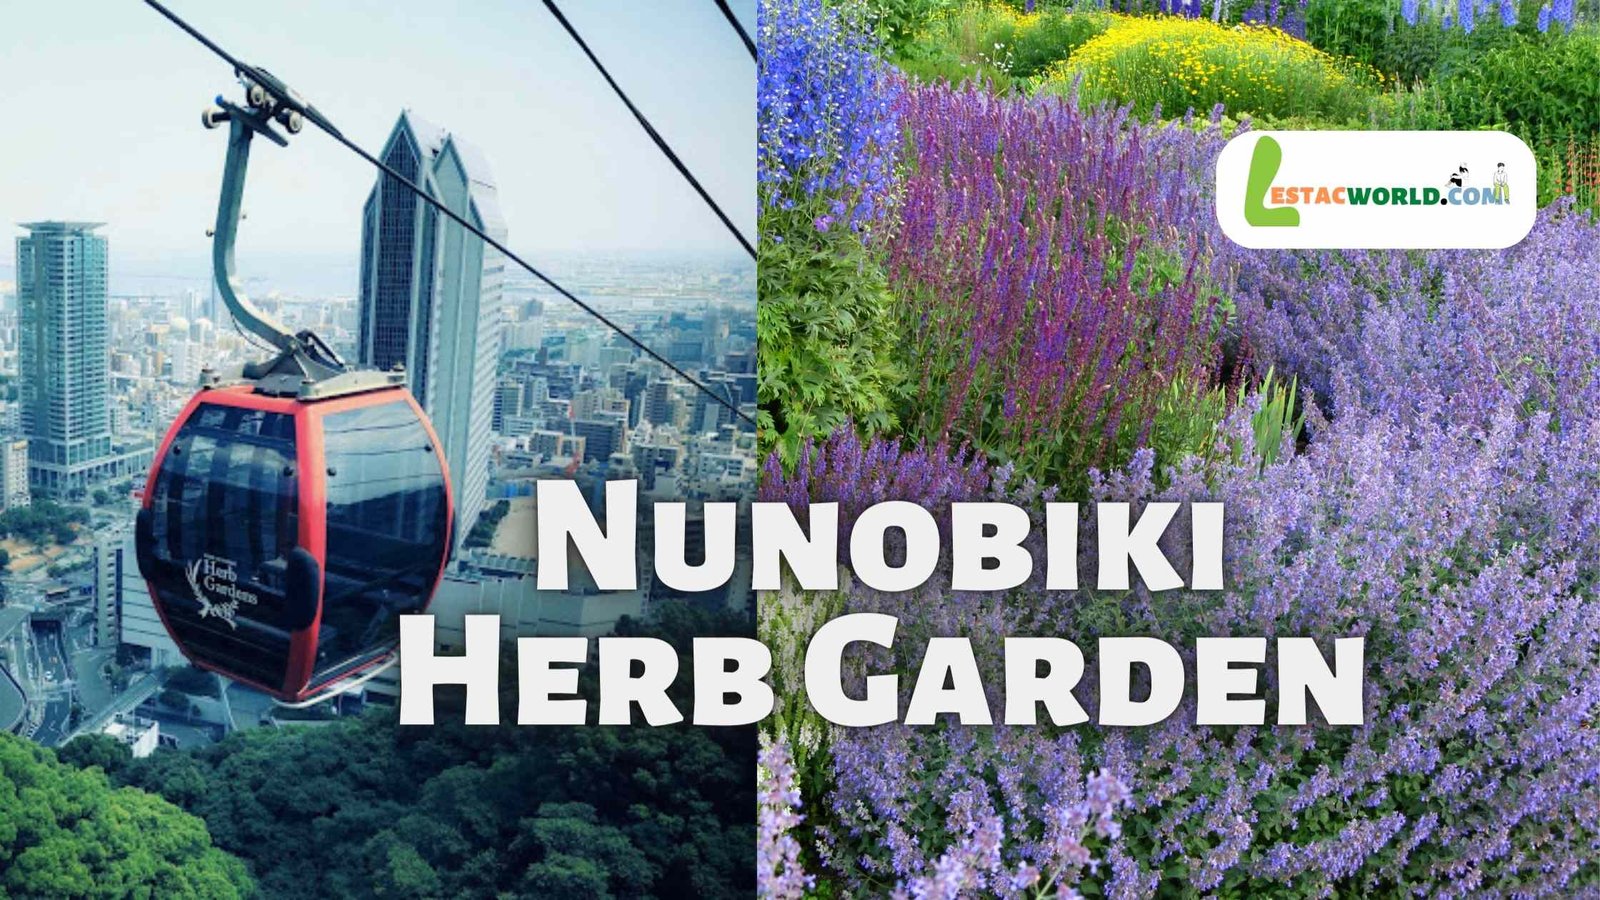 About Nunobiki Herb Garden